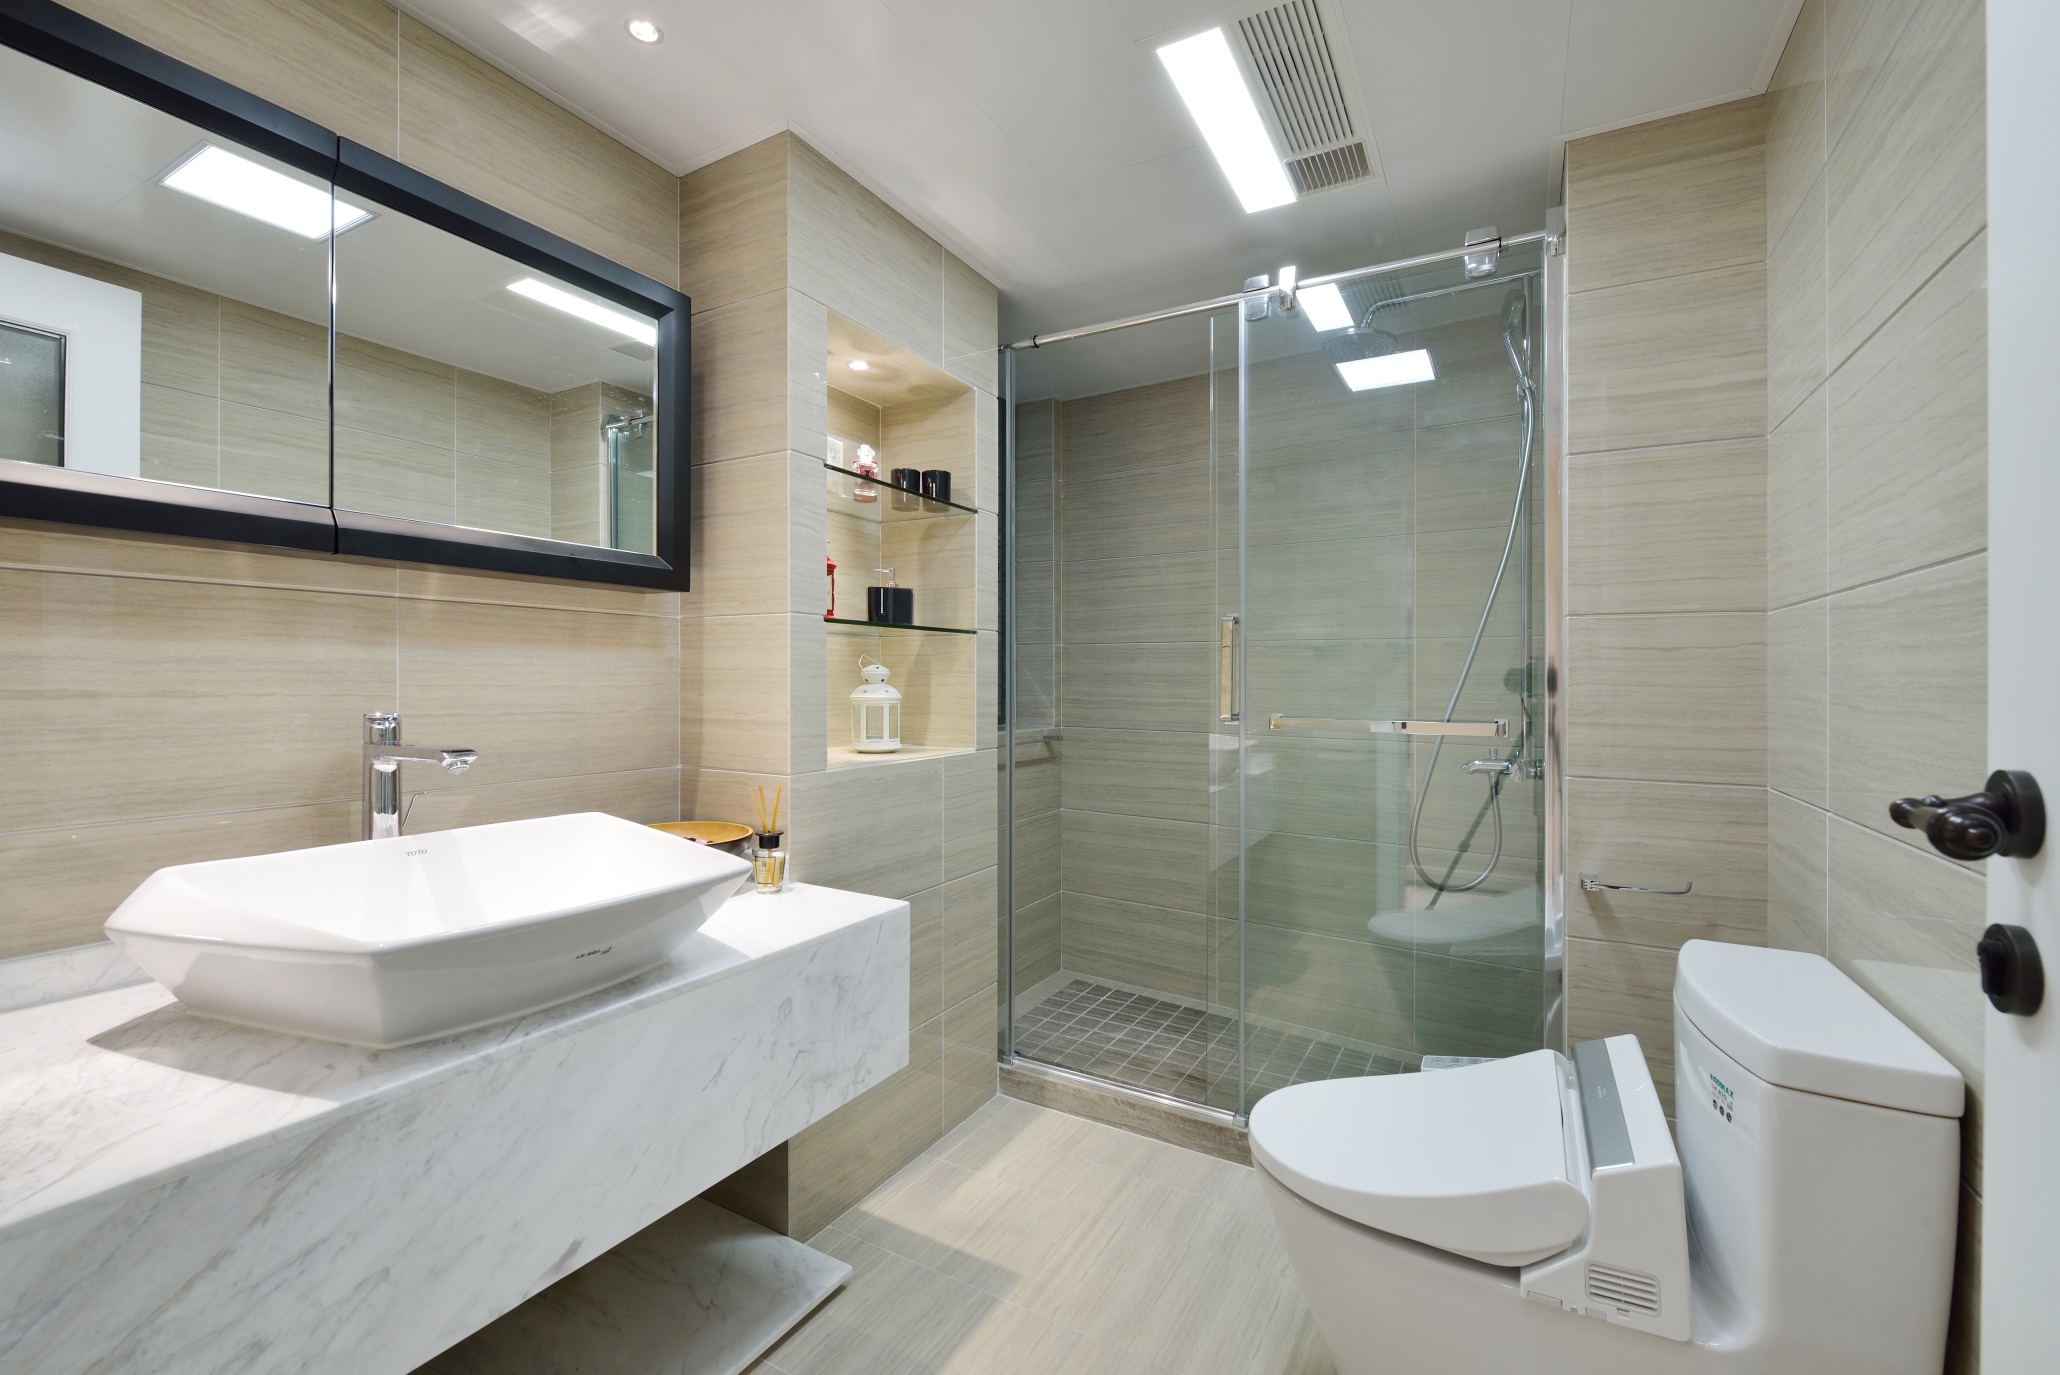 卫浴间主要采用米色调，配以白色洁具后空间光感很强，很有质感。